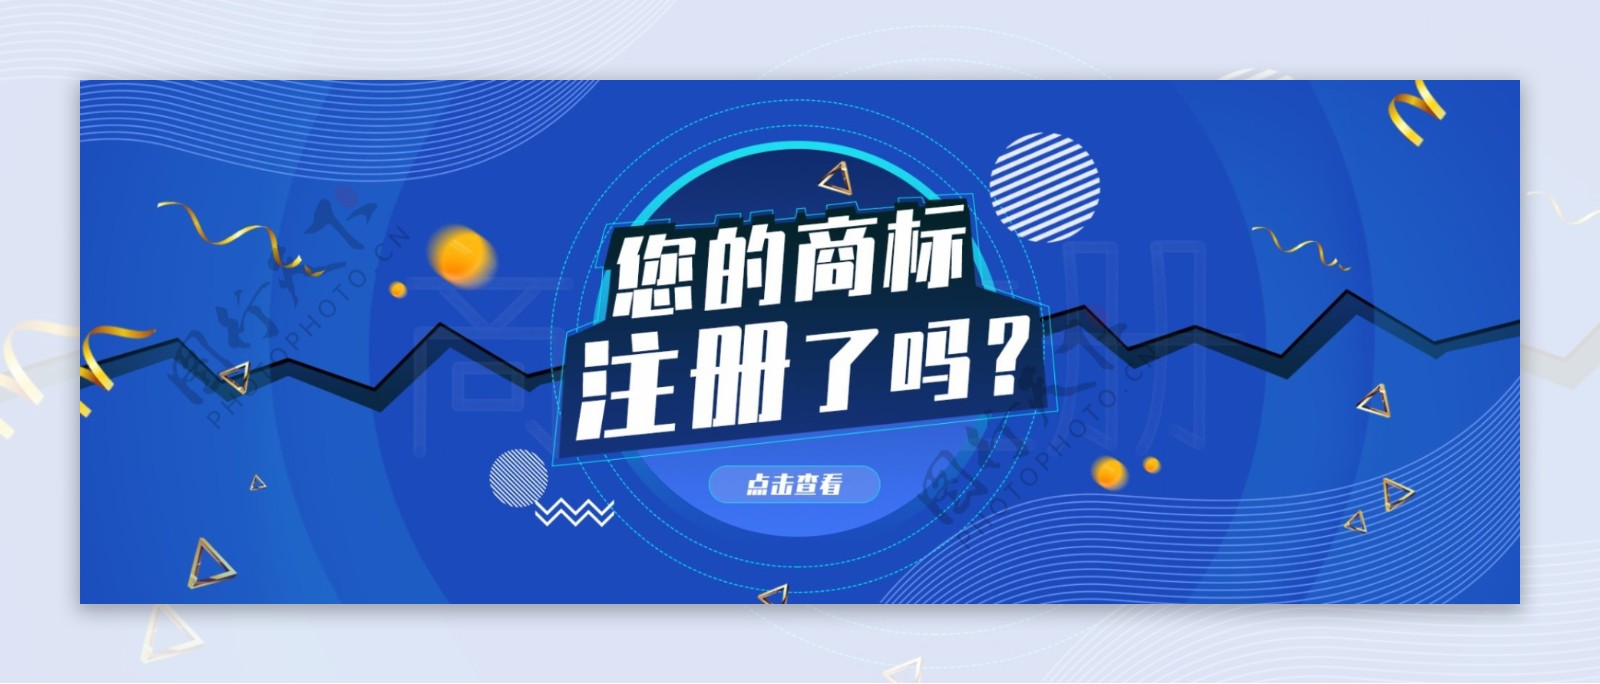 原创蓝色科技商标注册banner